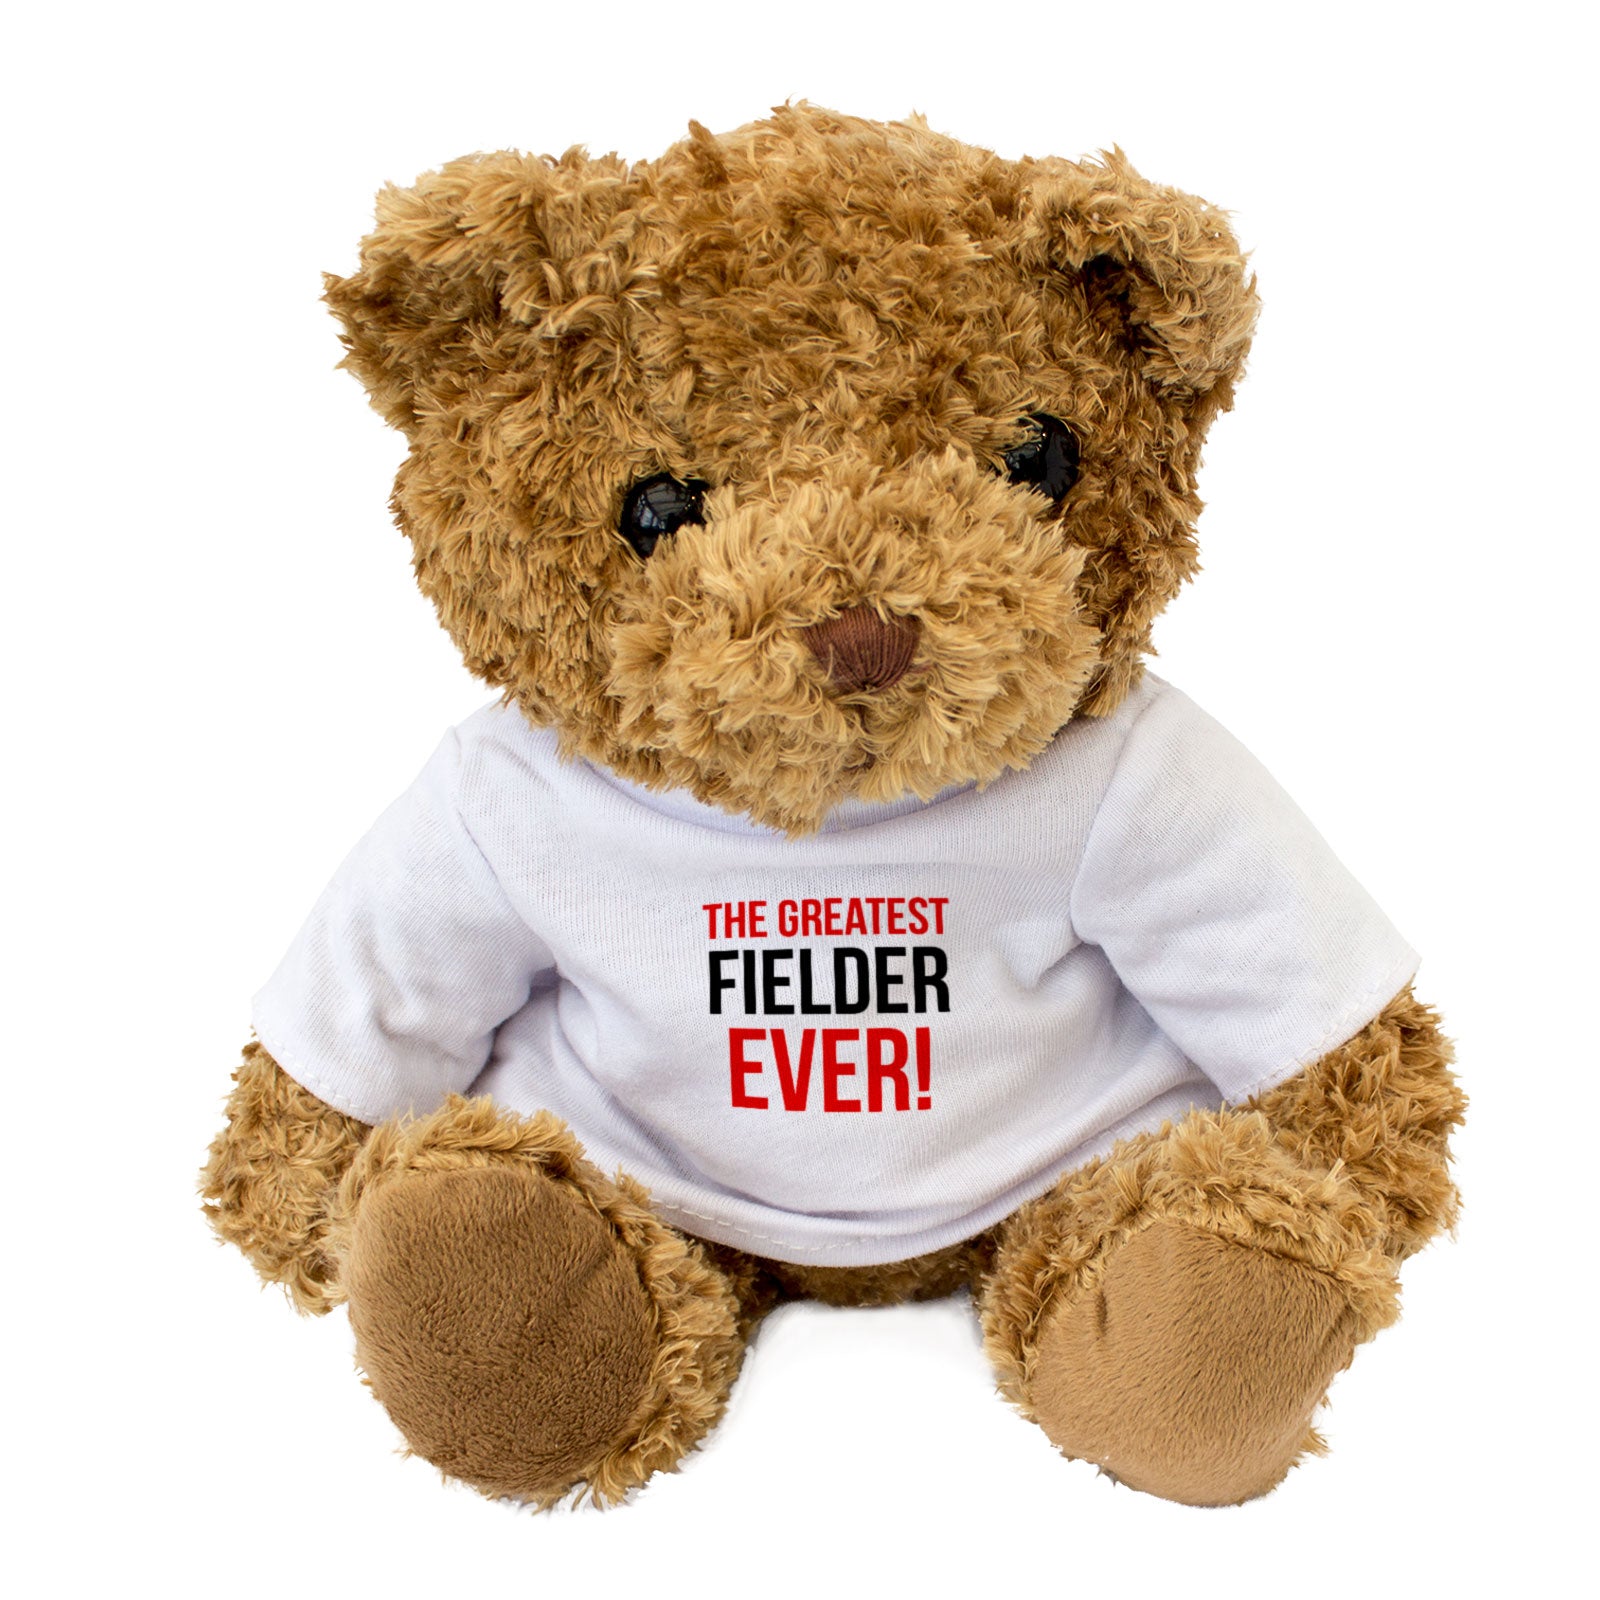 The Greatest Fielder Ever - Teddy Bear